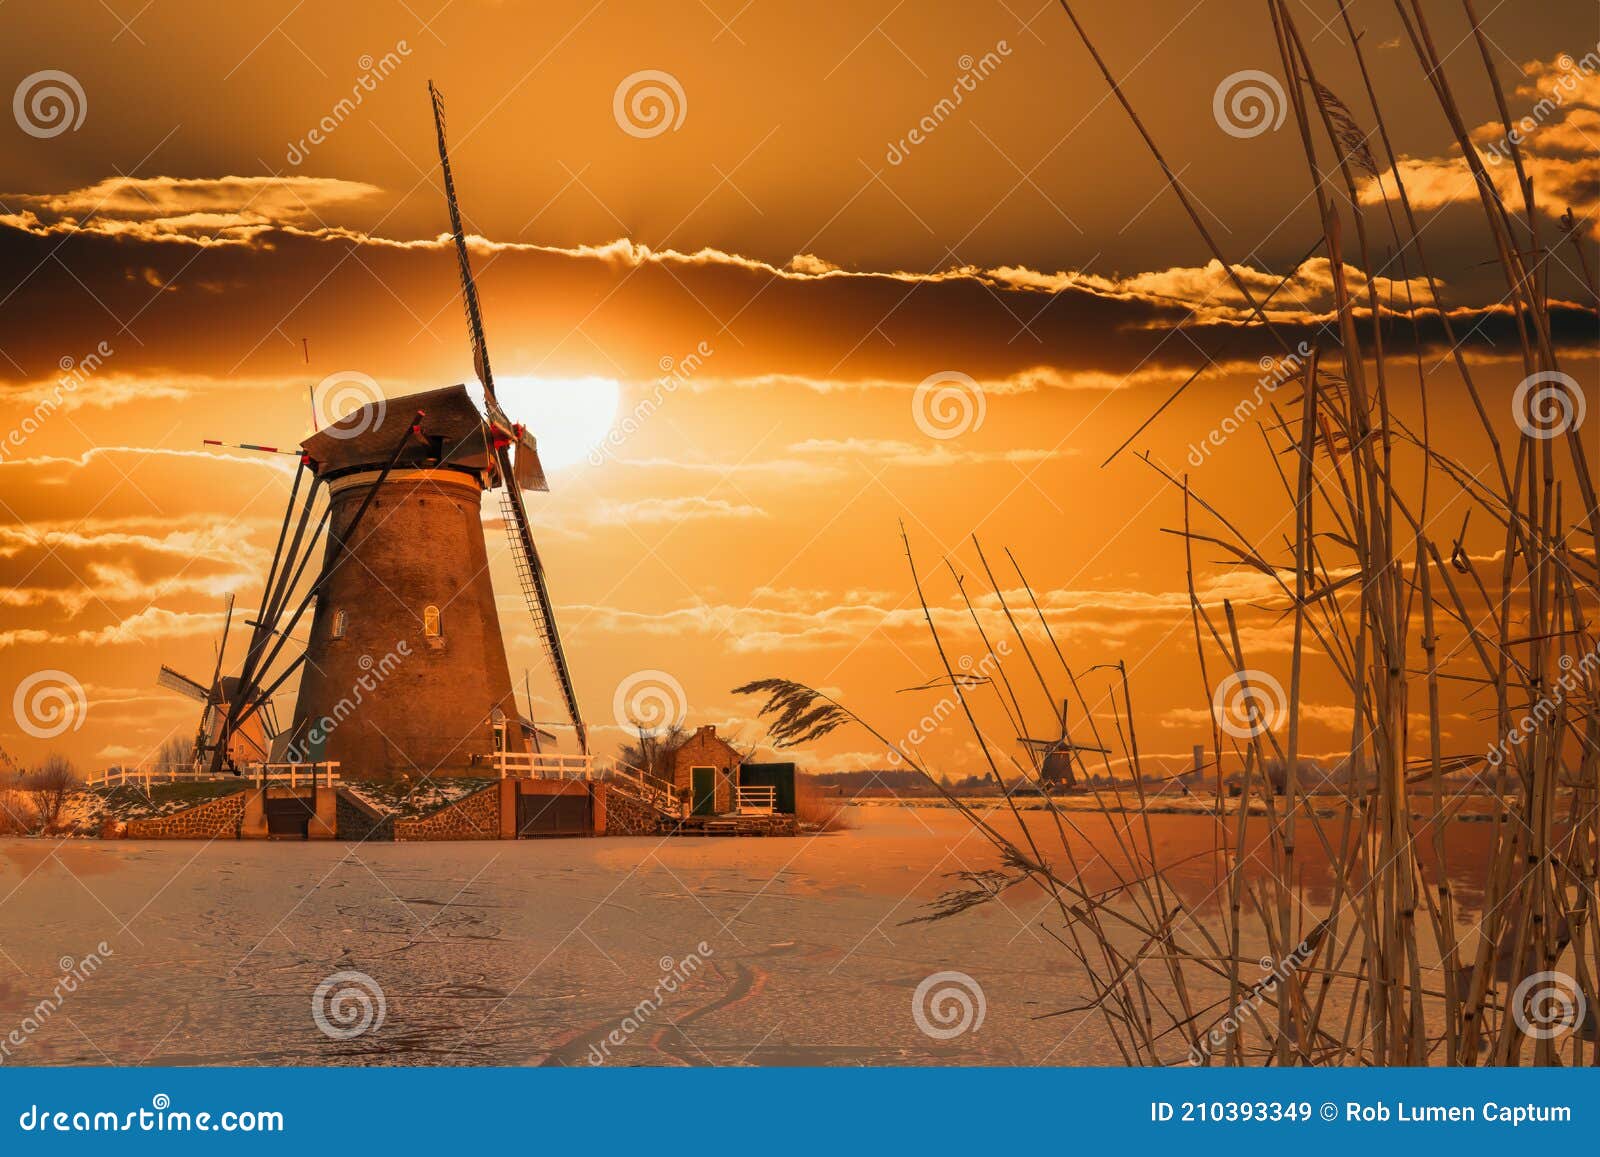 Os moinhos de vento históricos nos Países Baixos são ícones